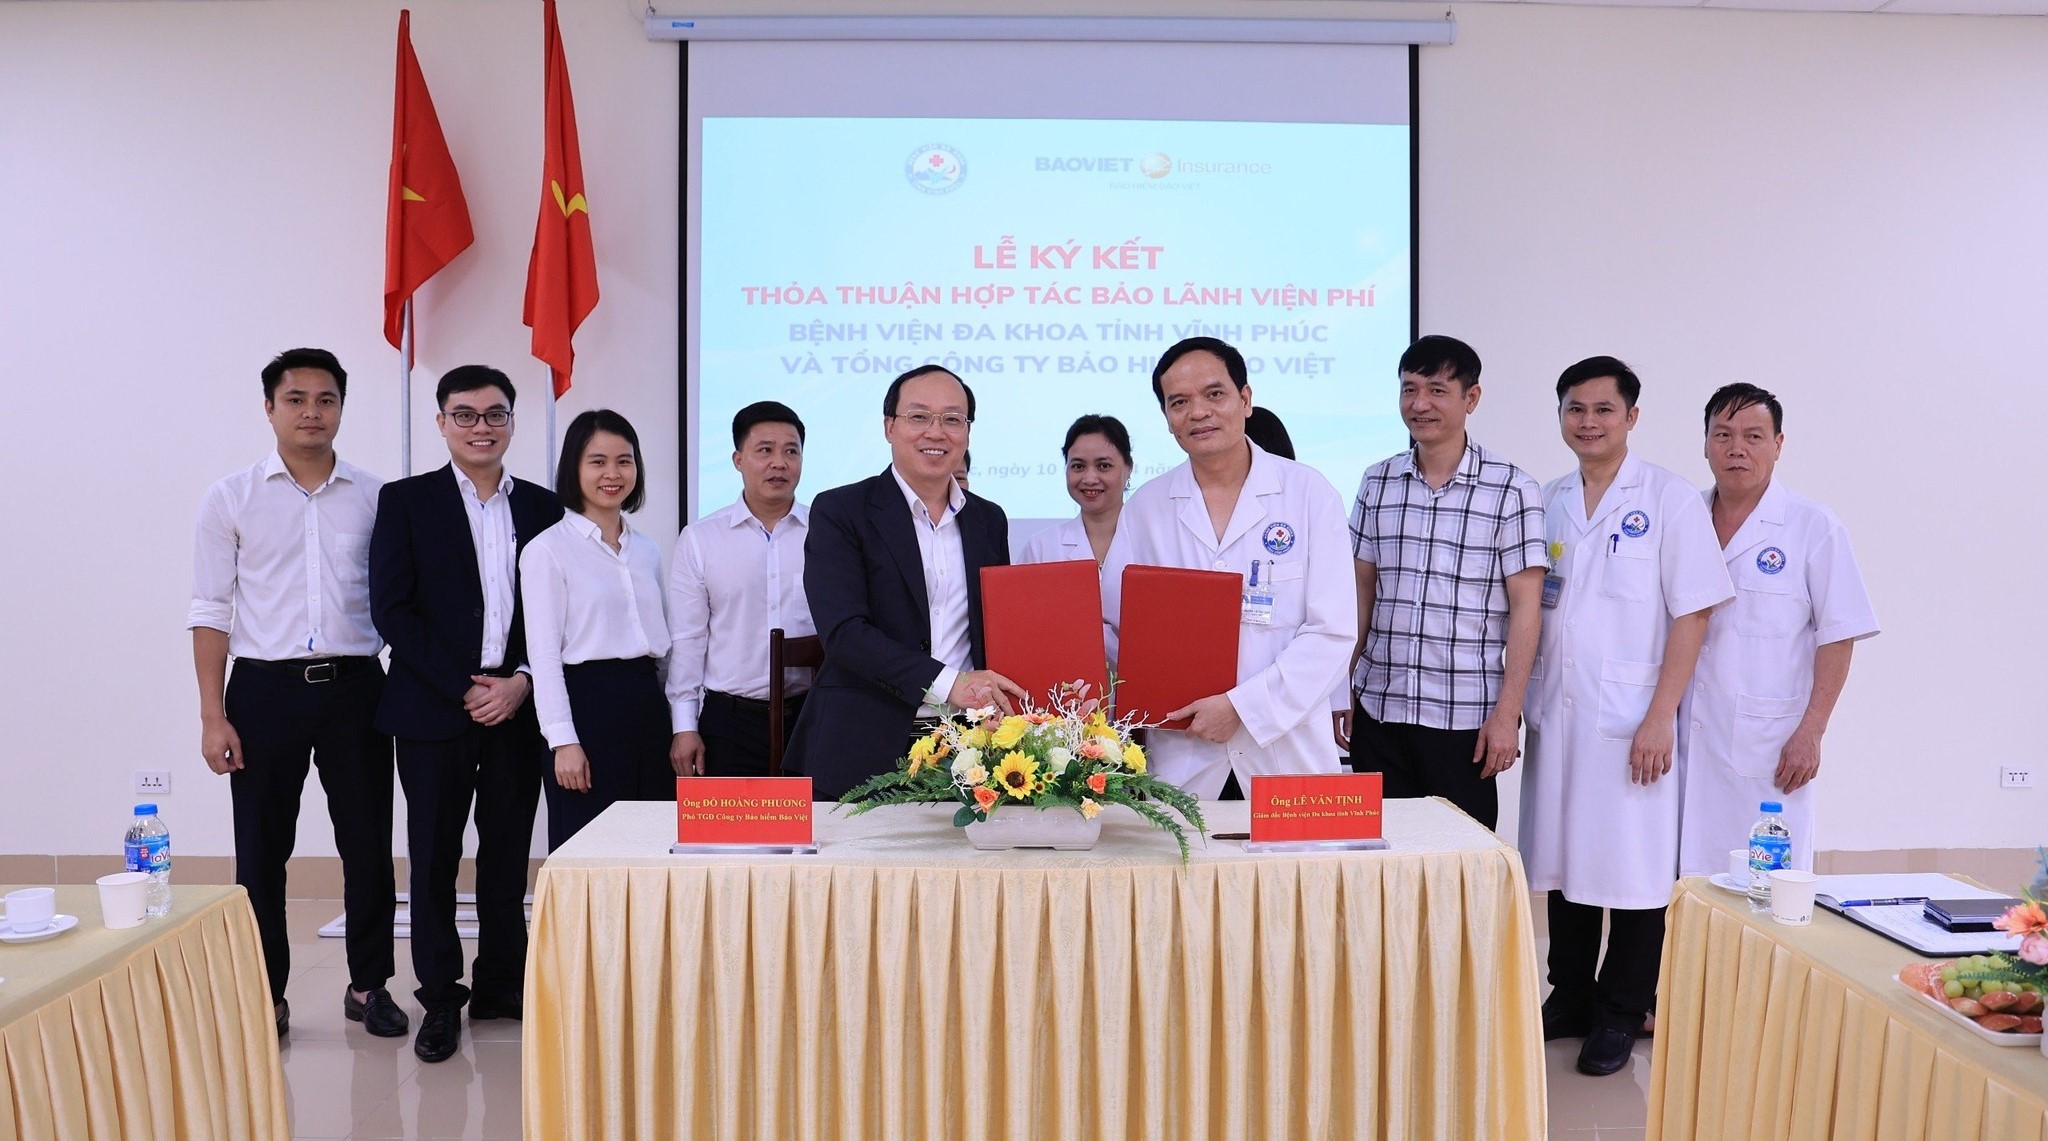 Bảo hiểm Bảo Việt ký kết hợp tác bảo lãnh với bệnh viện Đa khoa tỉnh Vĩnh Phúc